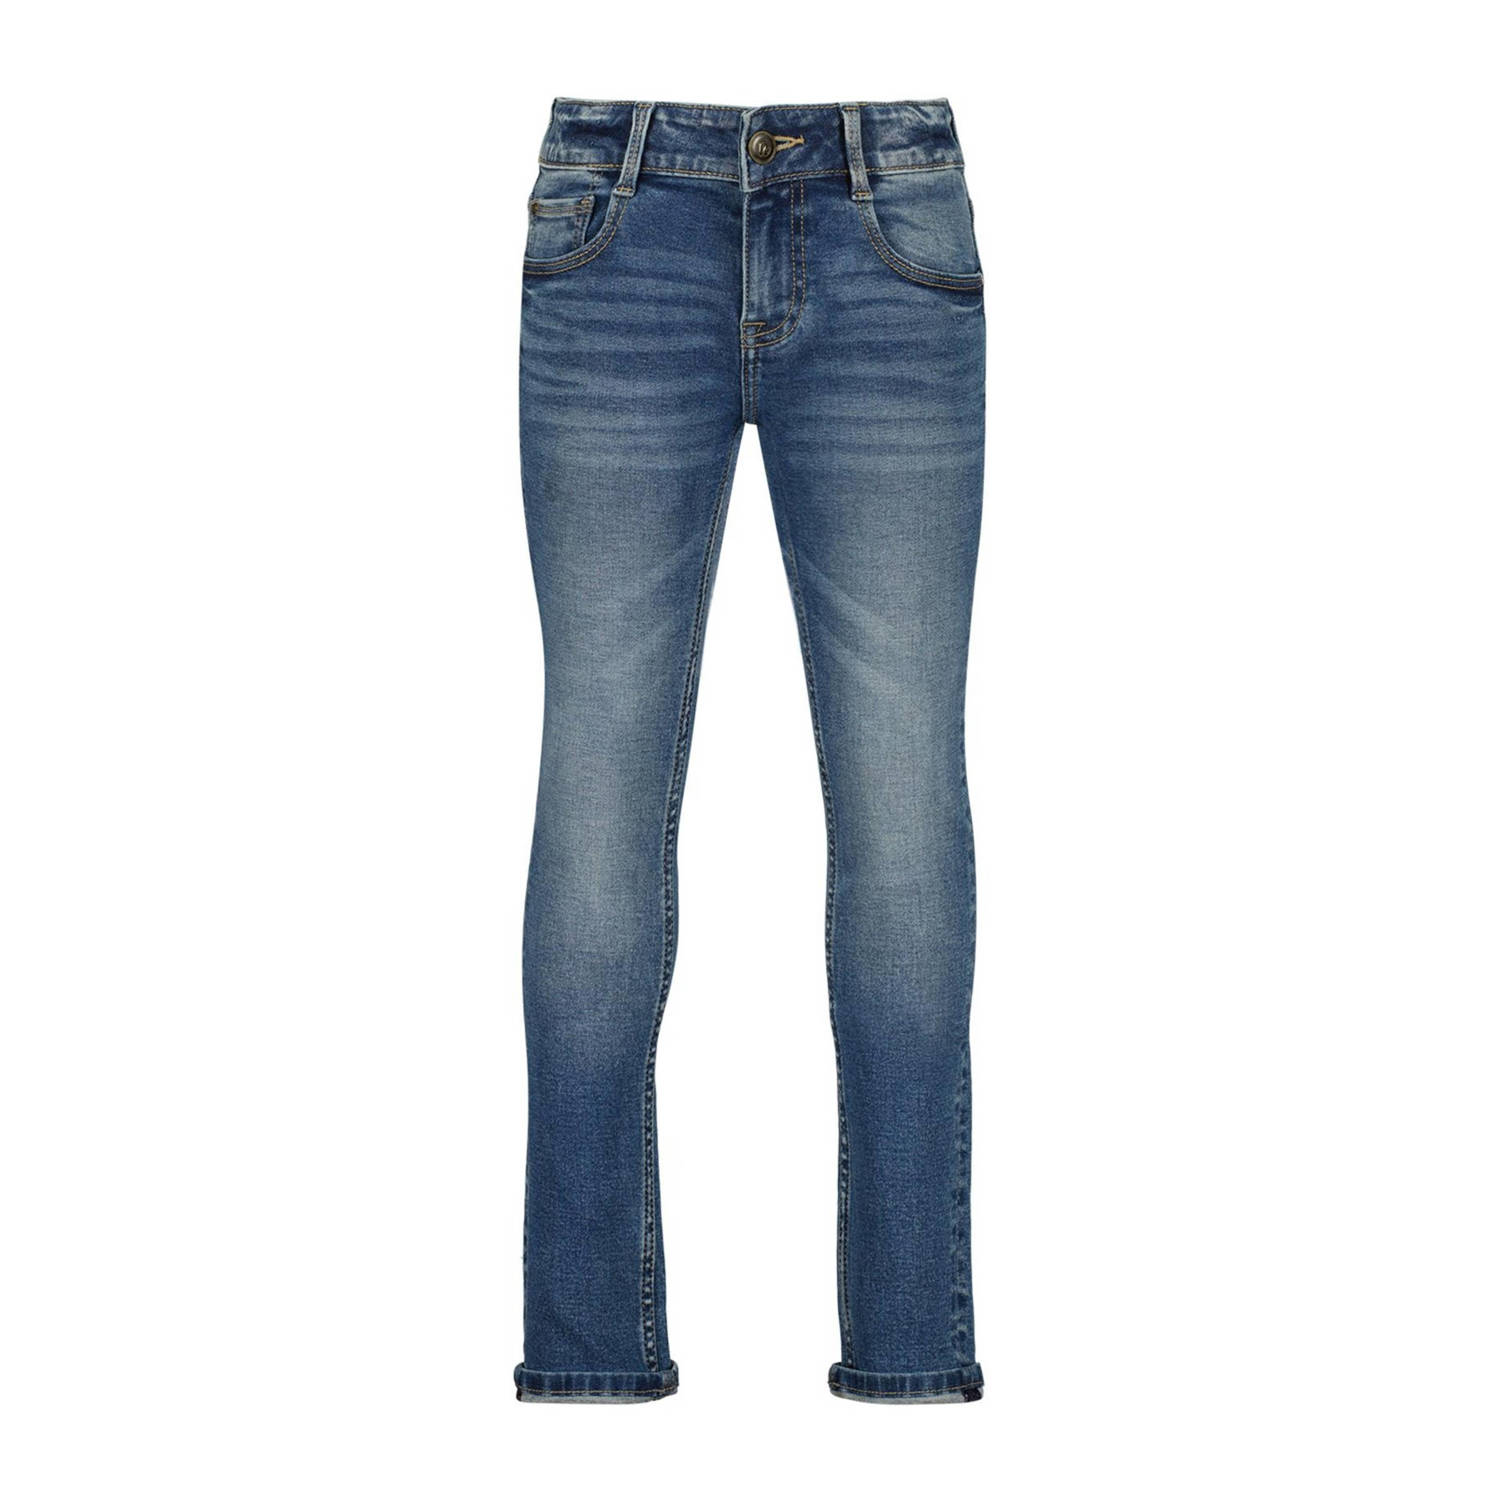 Raizzed slim fit jeans Boston mid blue stone